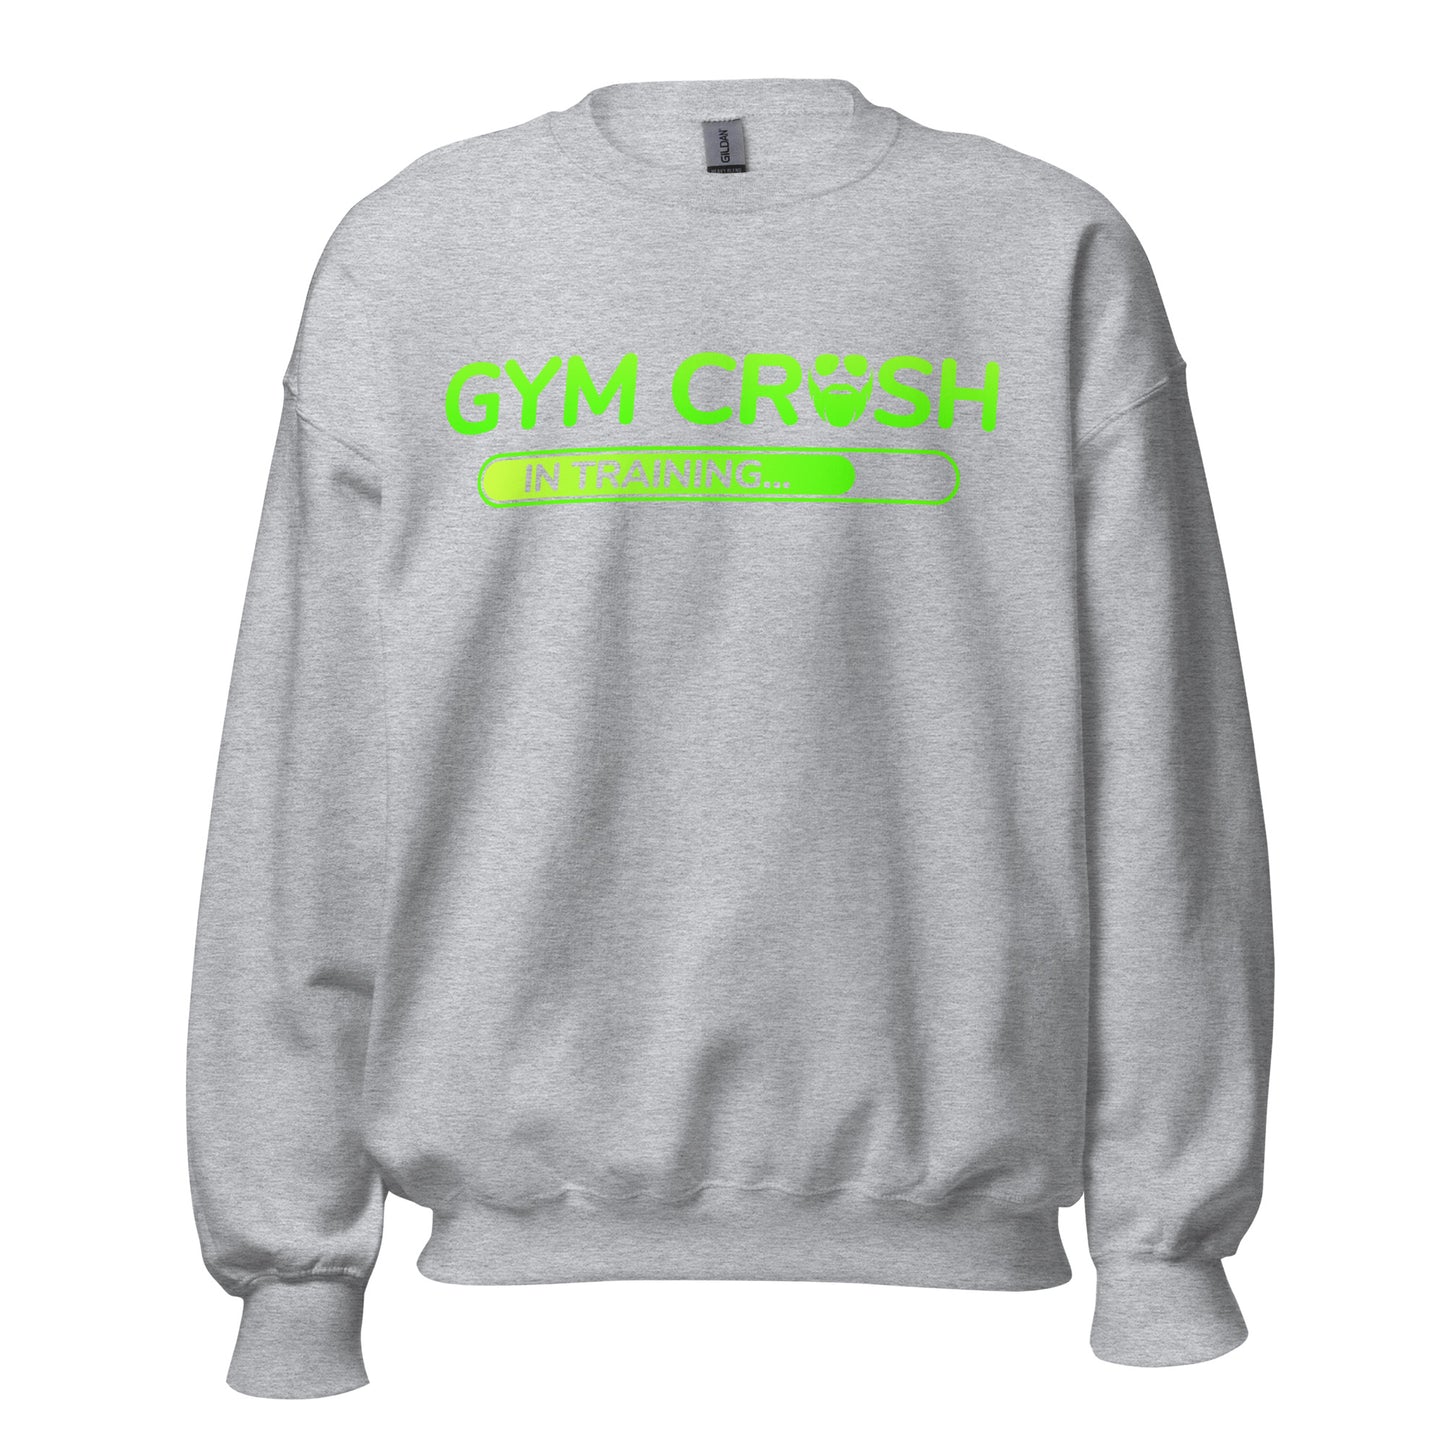 Gym Crush In Training (Green) Sweatshirt